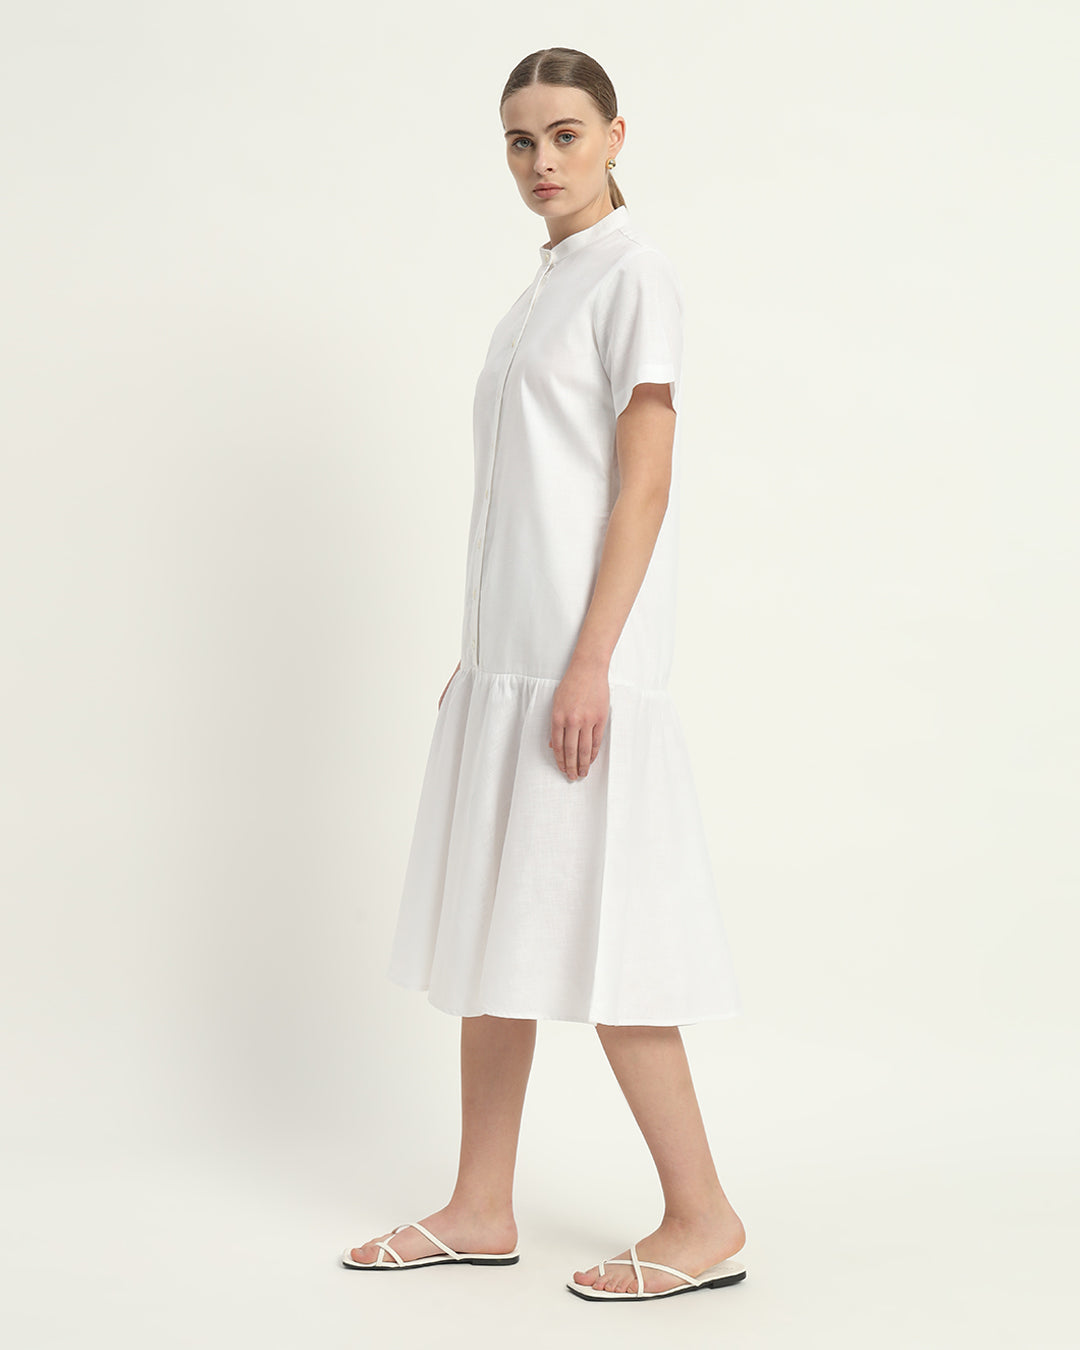 The Melrose Daisy White Linen Dress